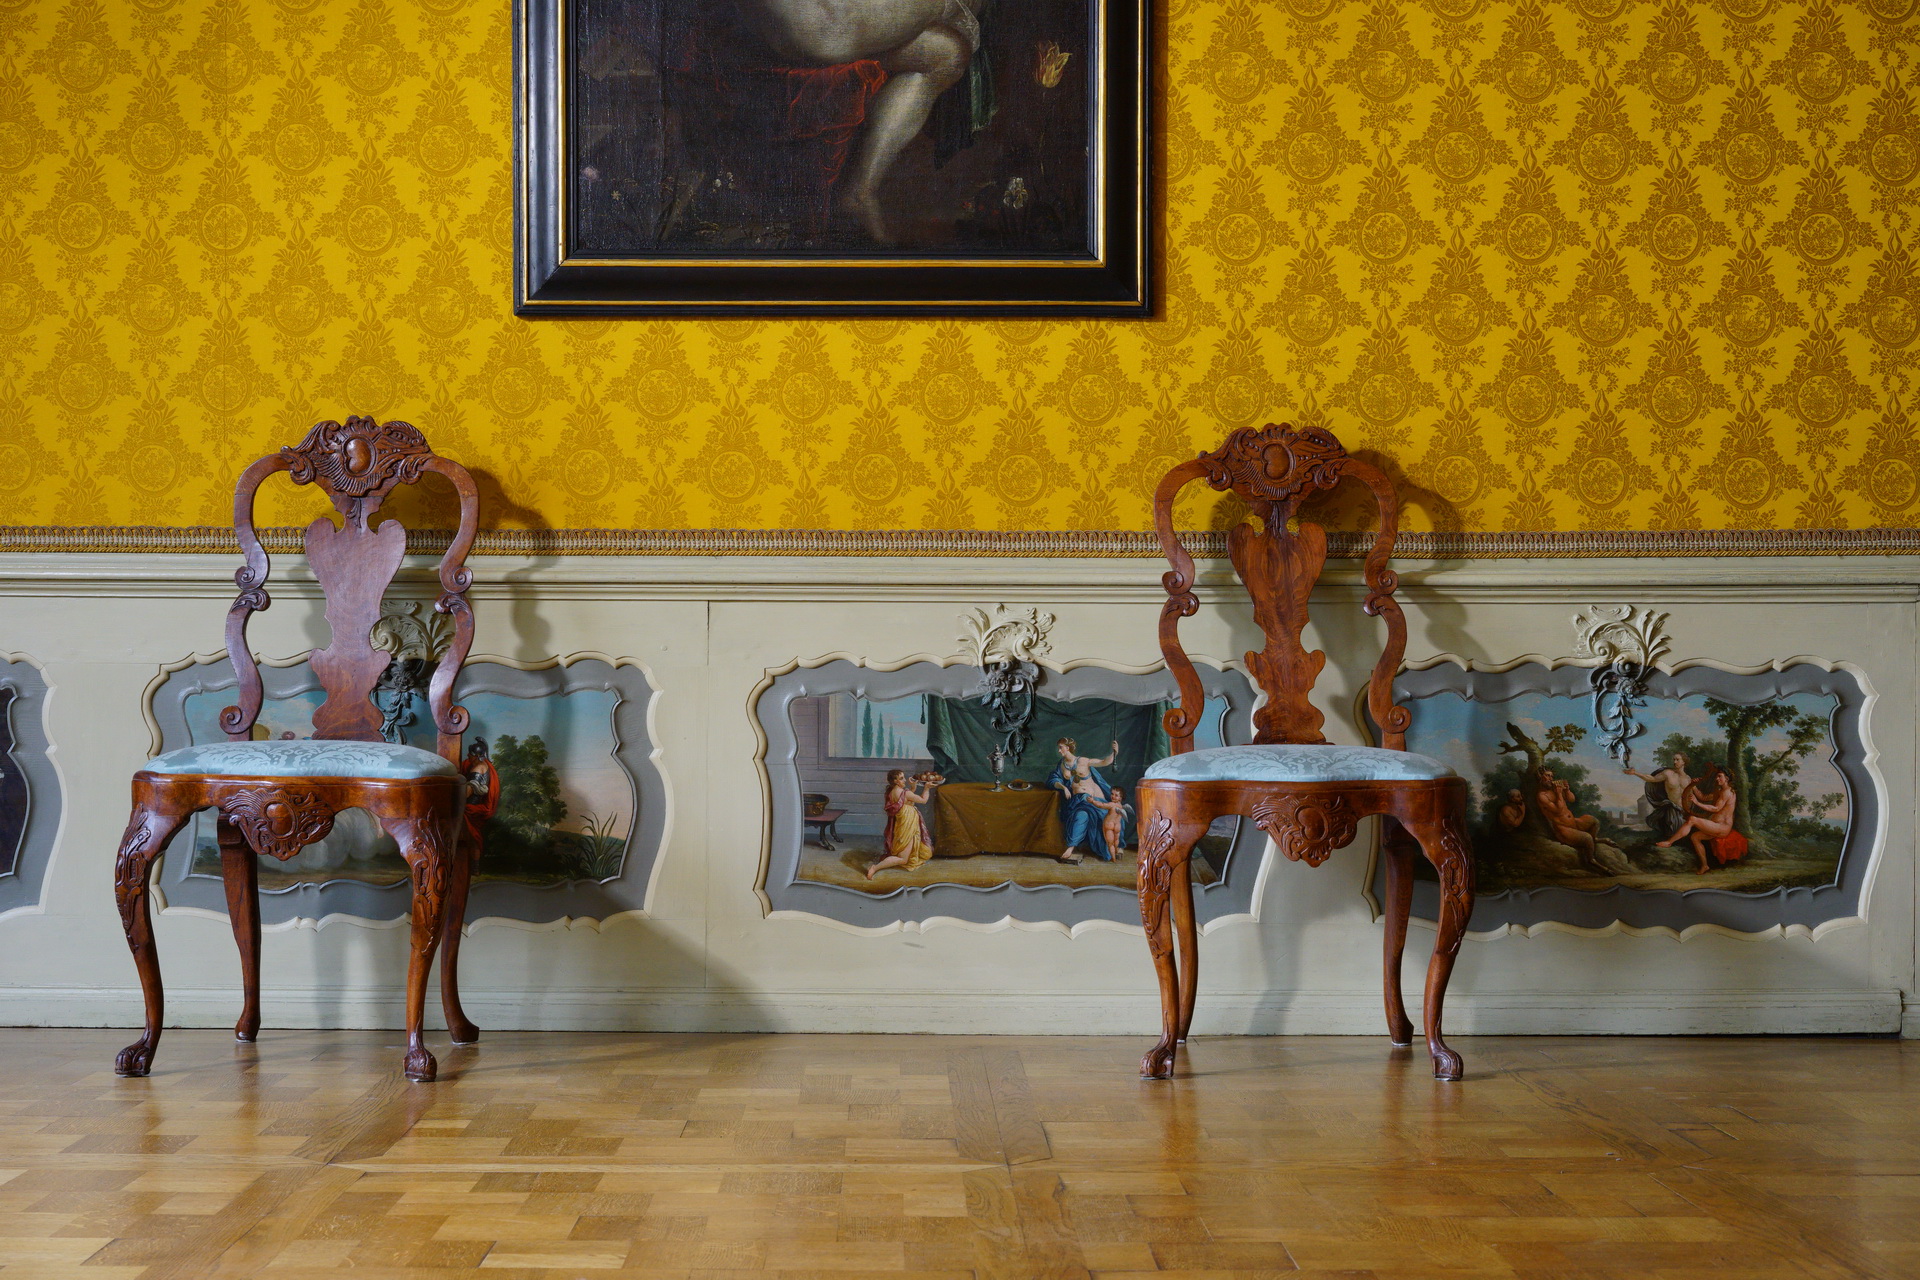 Ściana wyłożona żółtą tapetą, niżej lamperia z malunkami. Pod ścianą dwa krzesła, nad nimi fragment obrazu.